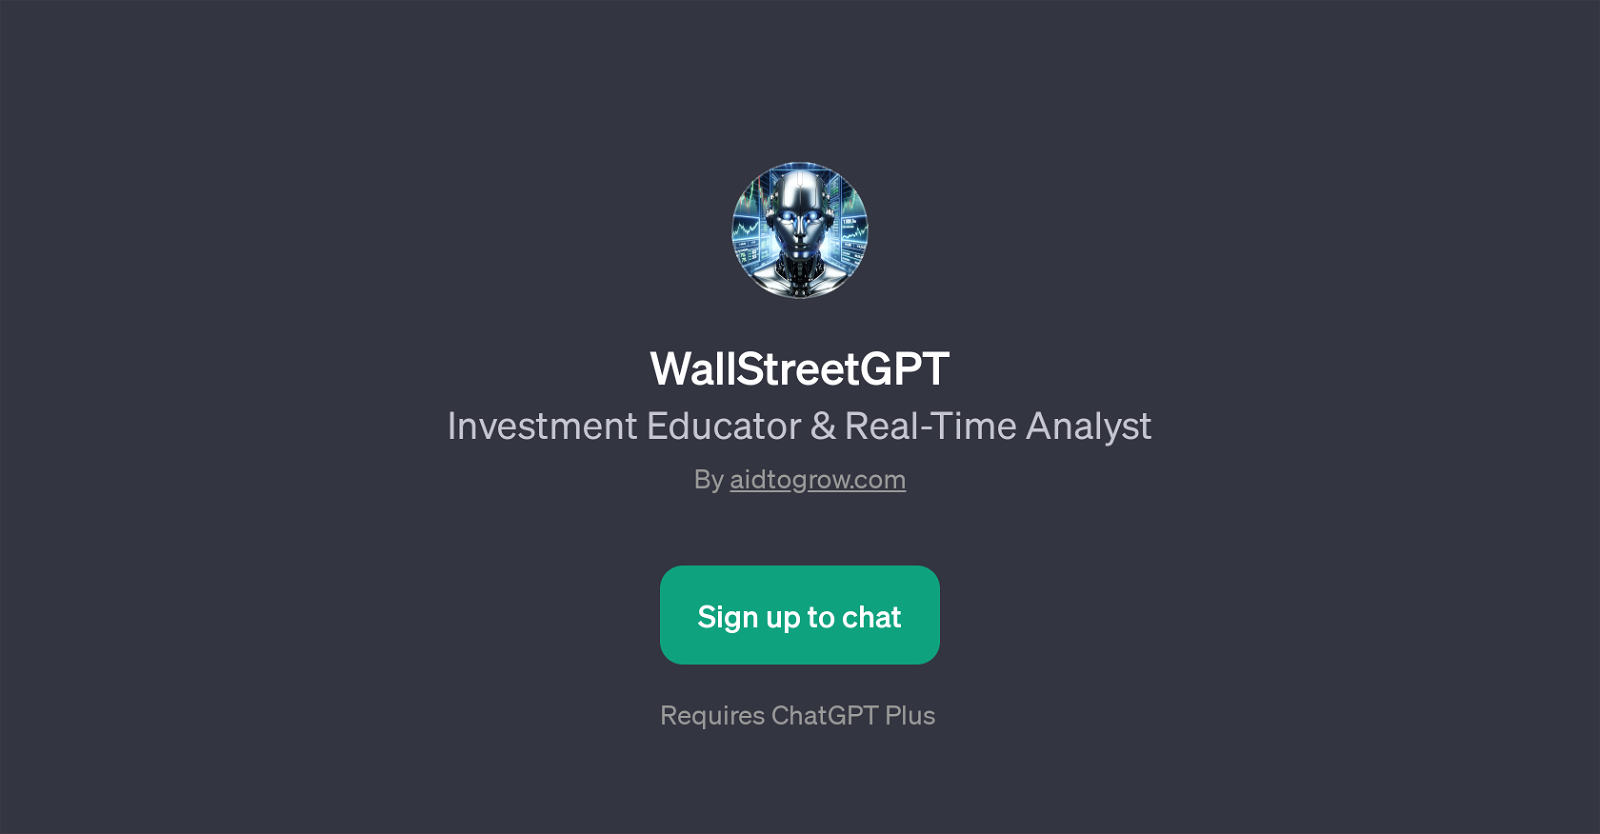 WallStreetGPT website